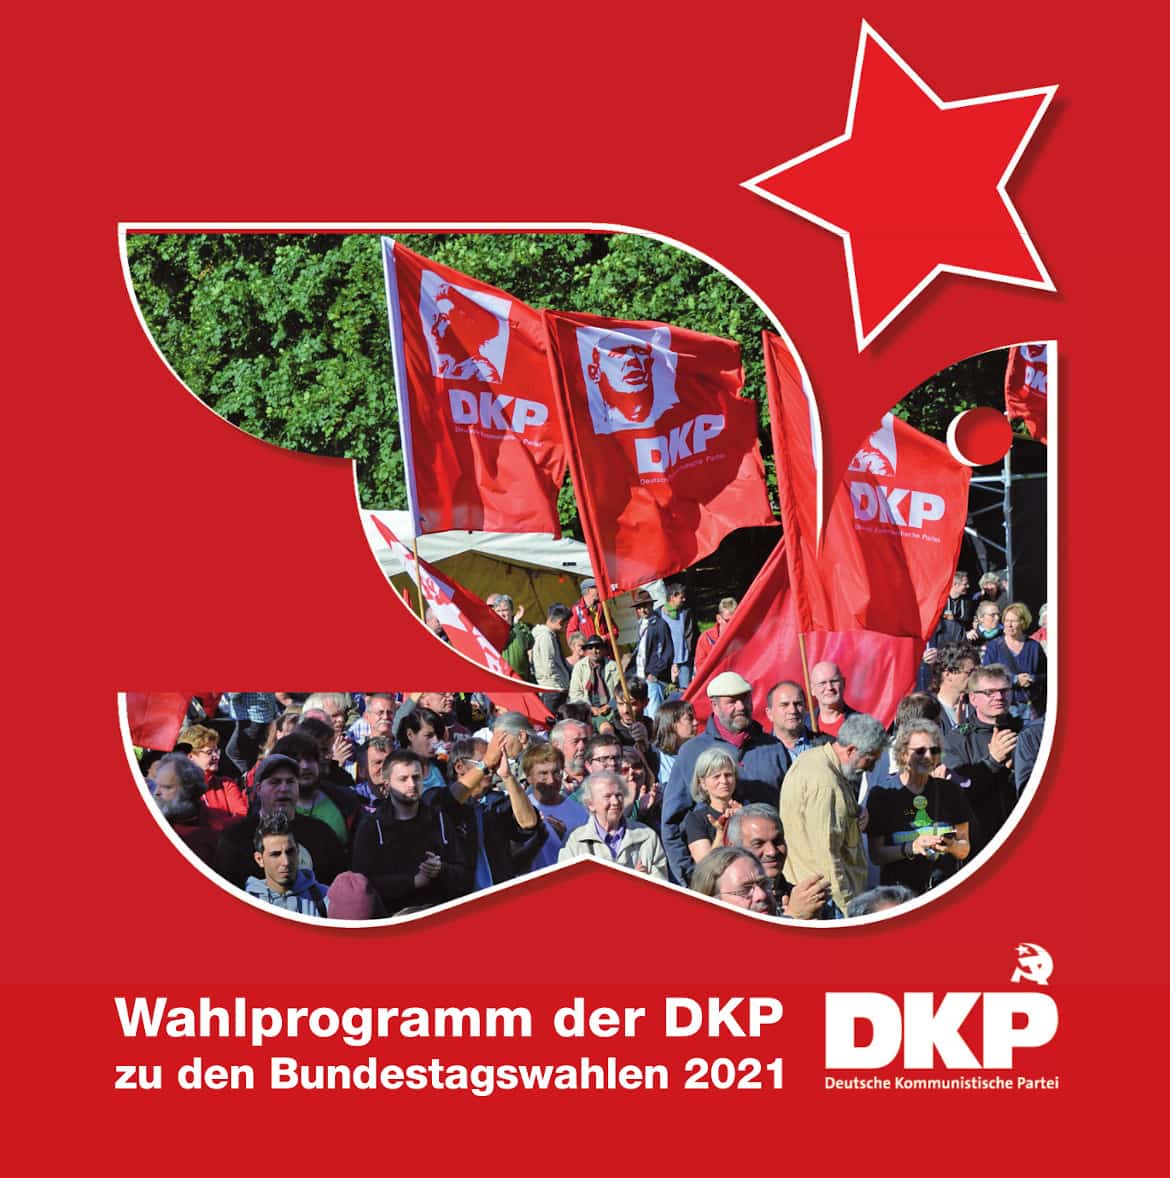 Bundestagswahlprogramm der Deutsche Kommunistische Partei (DKP) - Bundestagswahl 2021